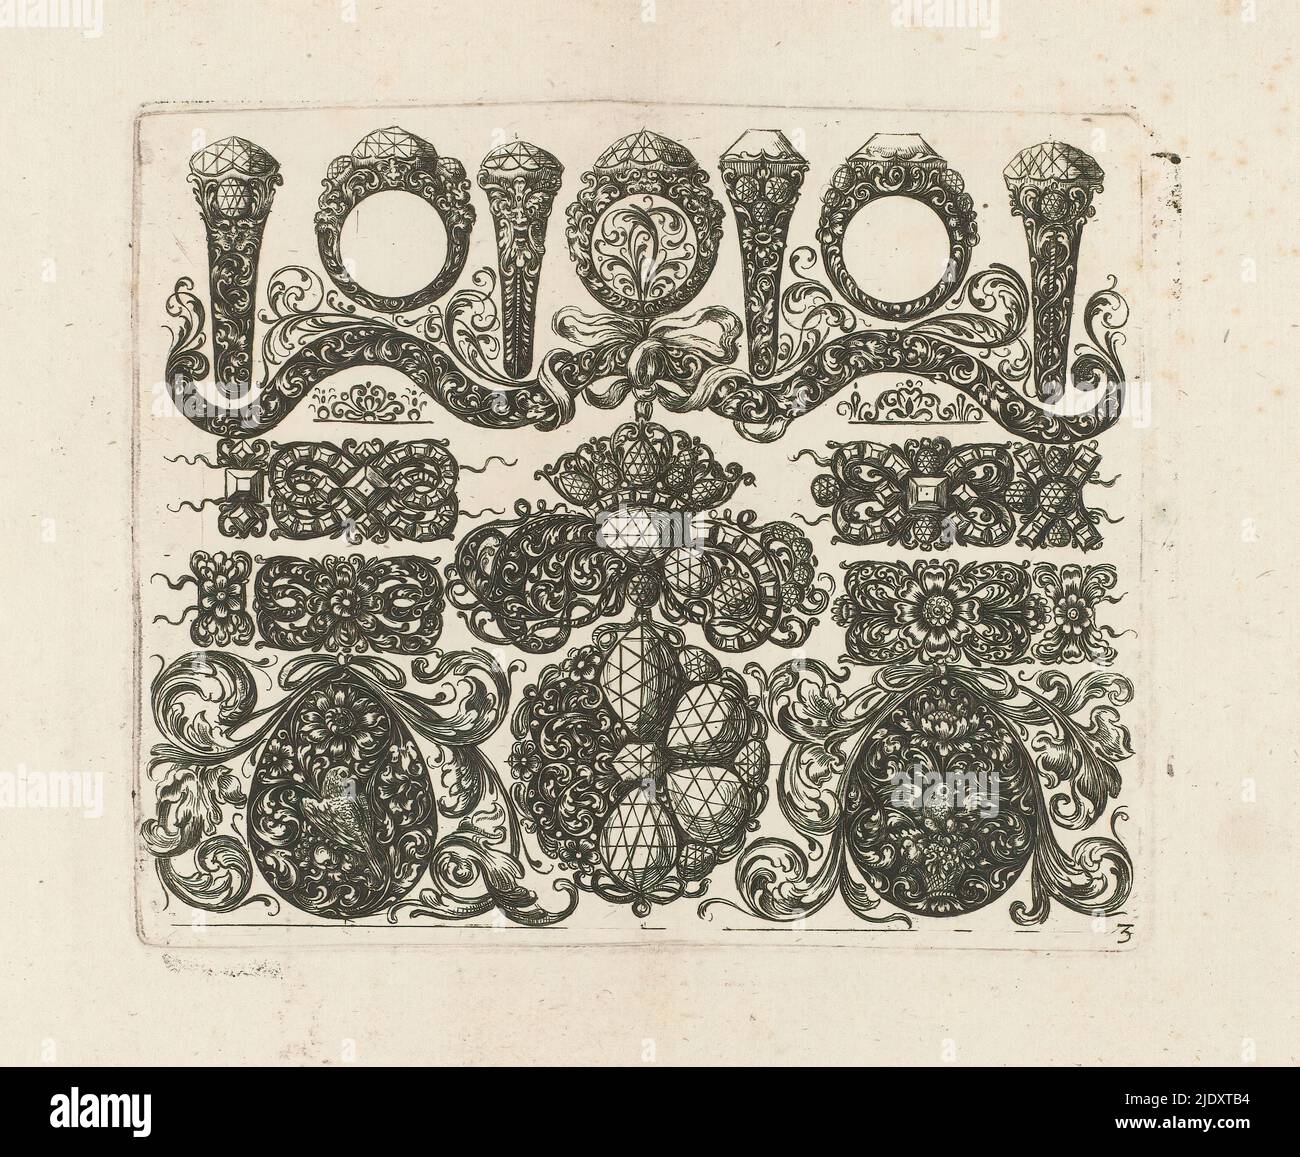 Diseños para joyería, Hoja 3 en una serie de 6, imprimador: Johann Wilhelm Heel, c. 1660, papel, grabado, altura 115 mm x anchura 139 mm Foto de stock